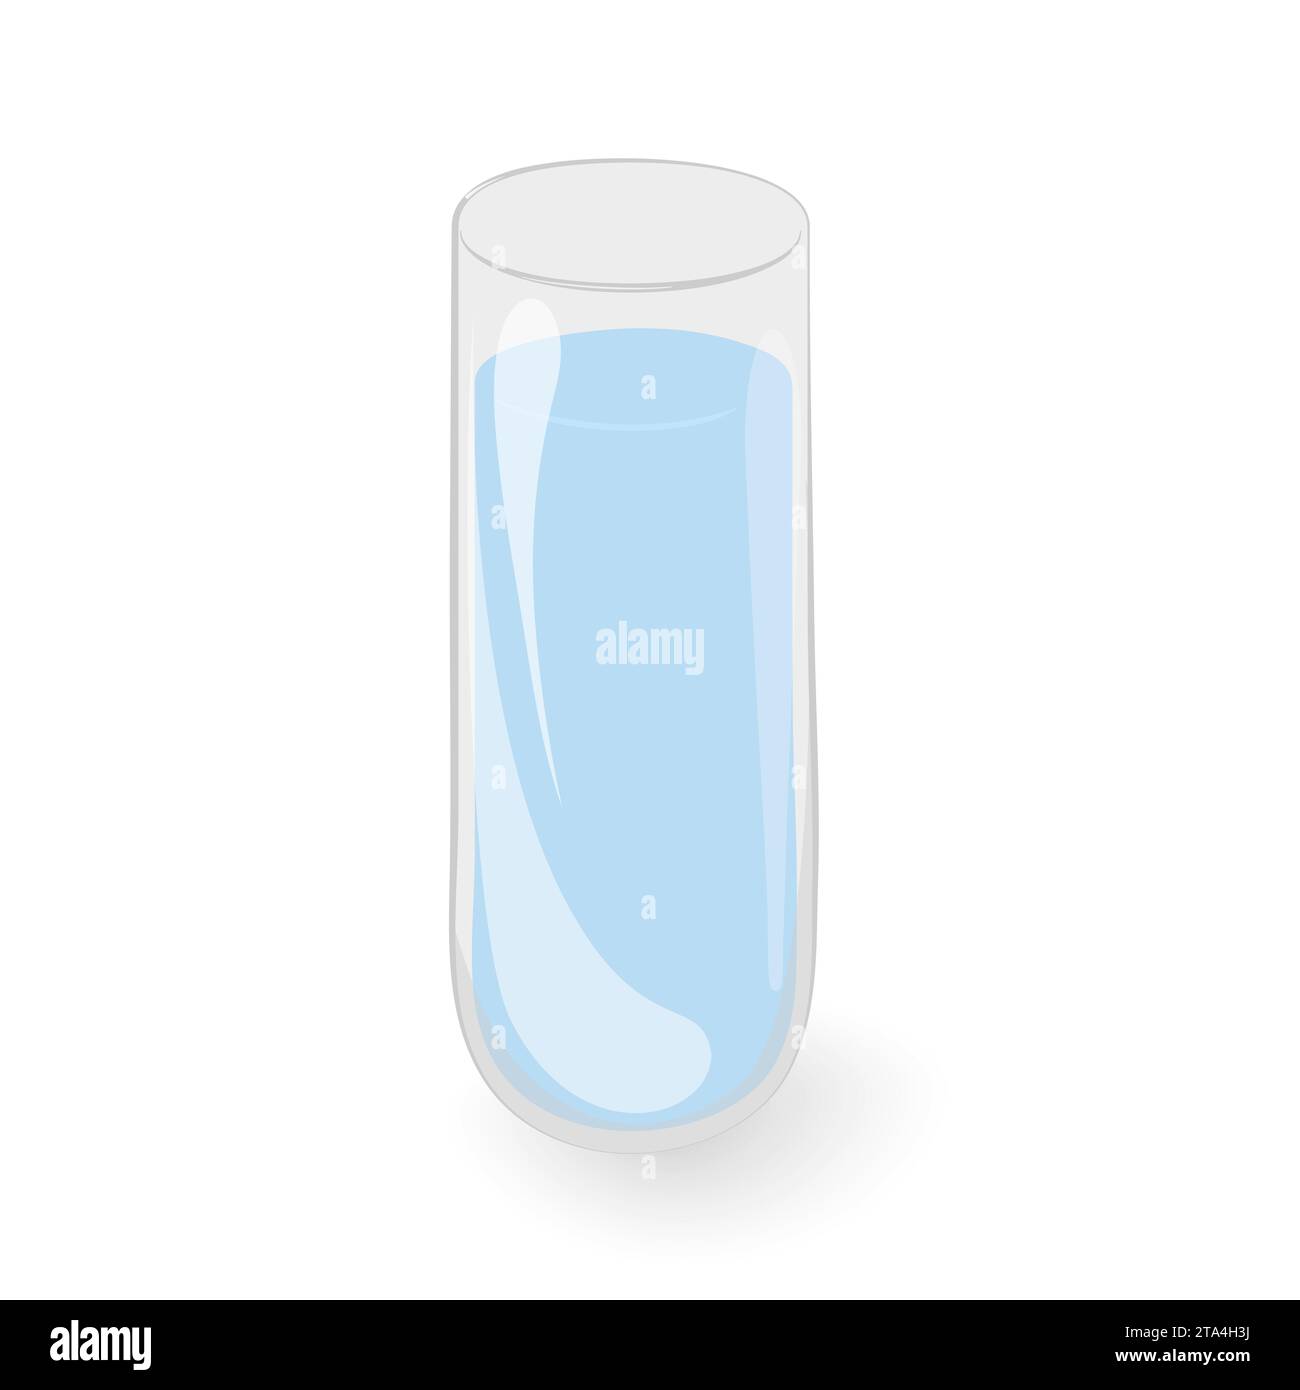 Autocollants transparents en forme de bouteille de verrerie